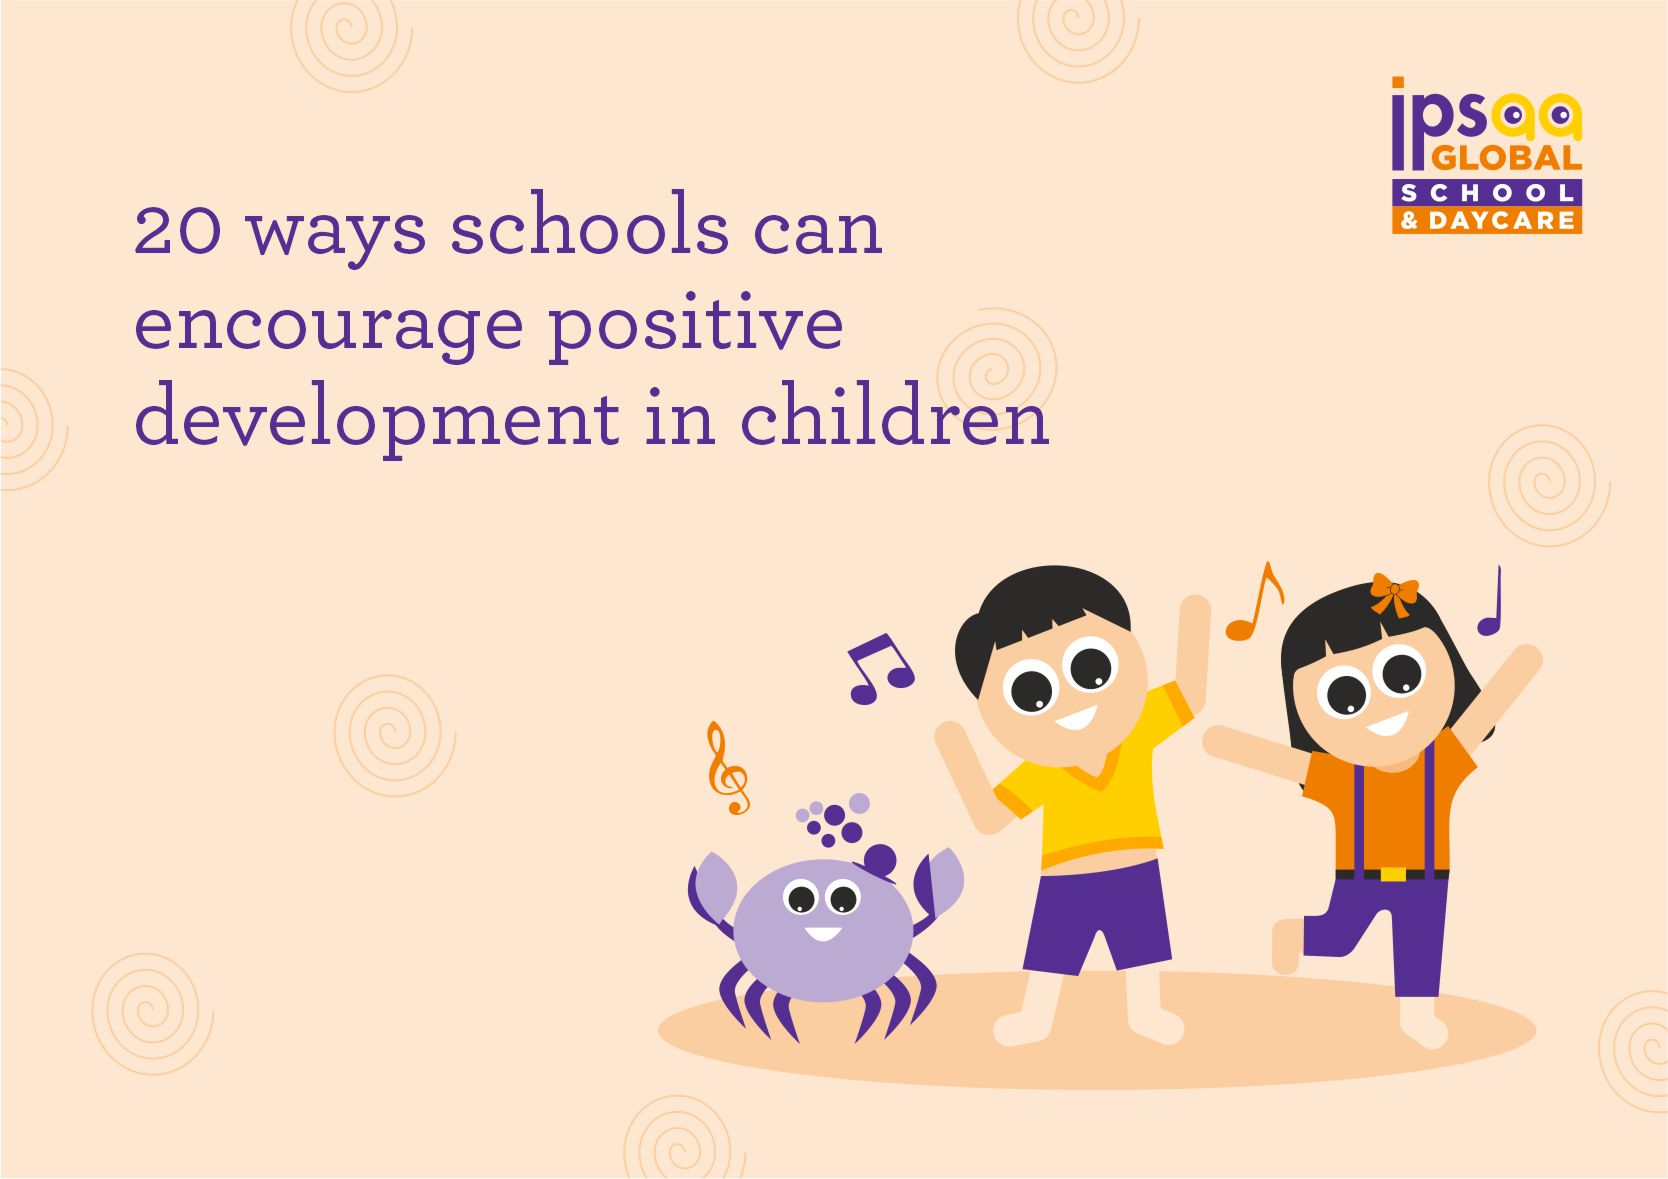 20 ways schools encourage positive development in children